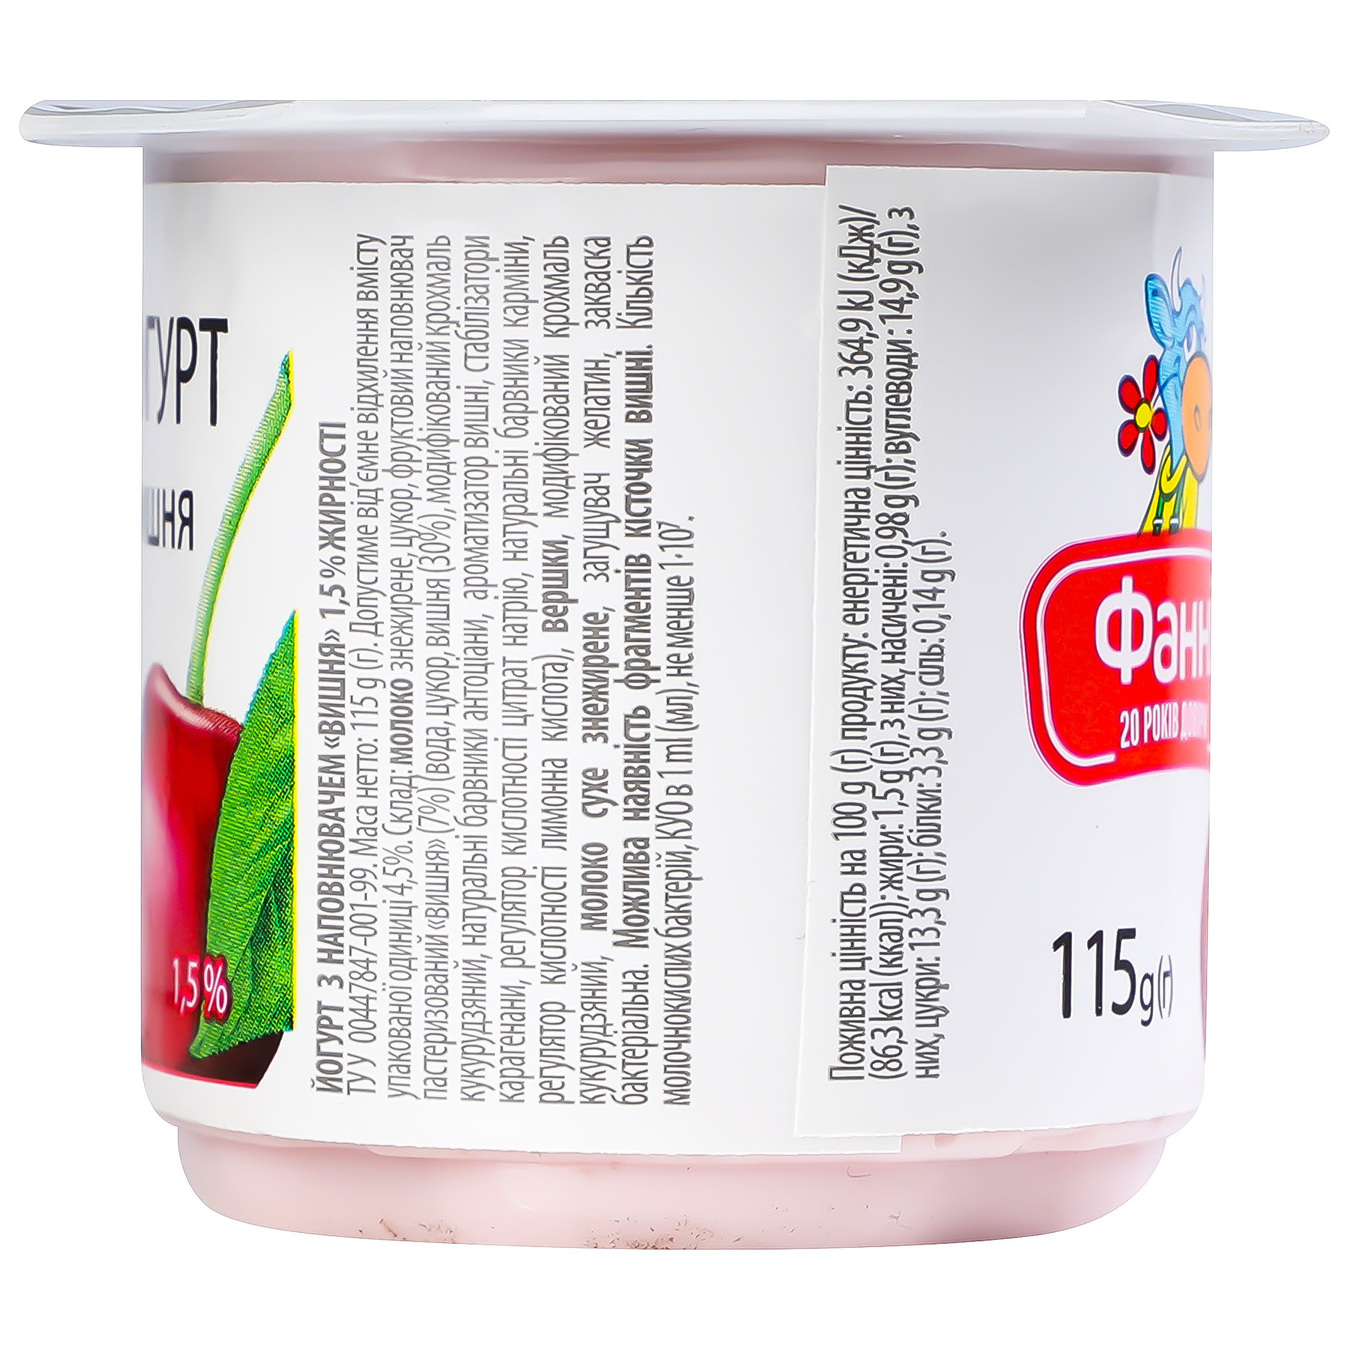 Йогурт Фанні з наповнювачем вишня стаканчик 1,5% 115г 4